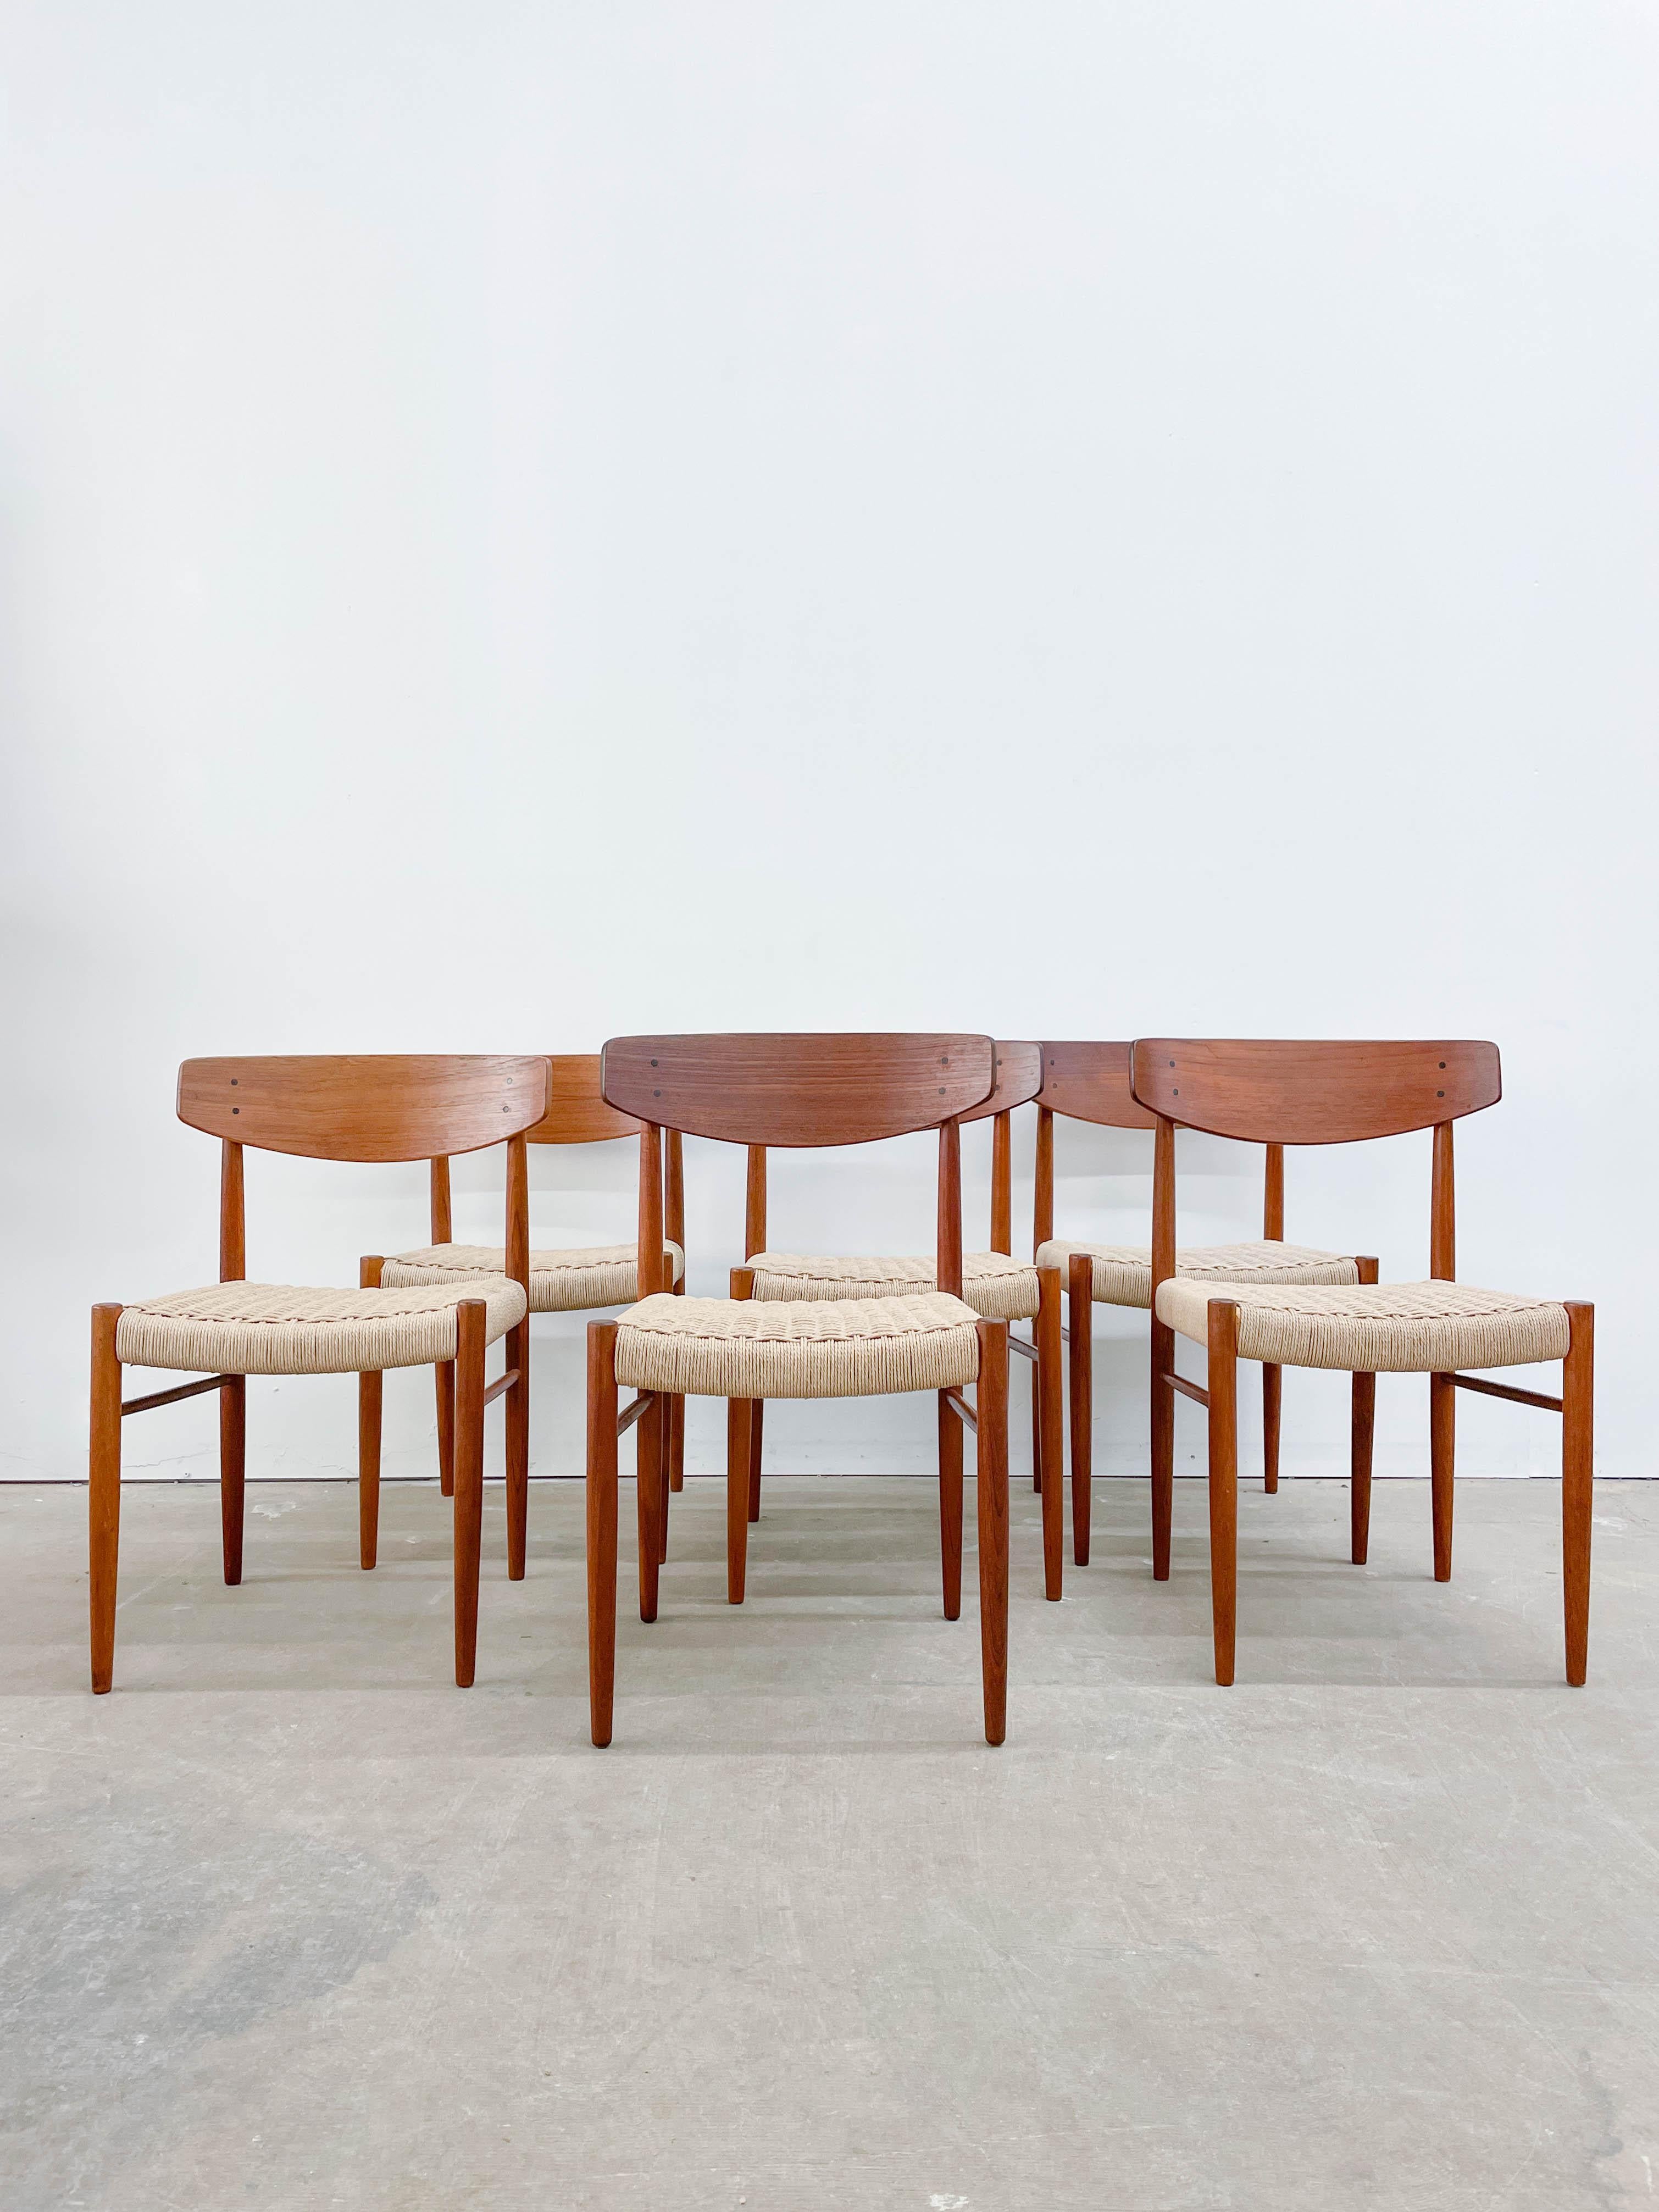 Il s'agit d'un exemple fantastique de siège moderne danois du milieu du siècle dernier, fabriqué avec soin et expertise. Cet ensemble de six chaises de salle à manger nouvellement tissées et restaurées, fabriquées par AM Mobler dans les années 1960,